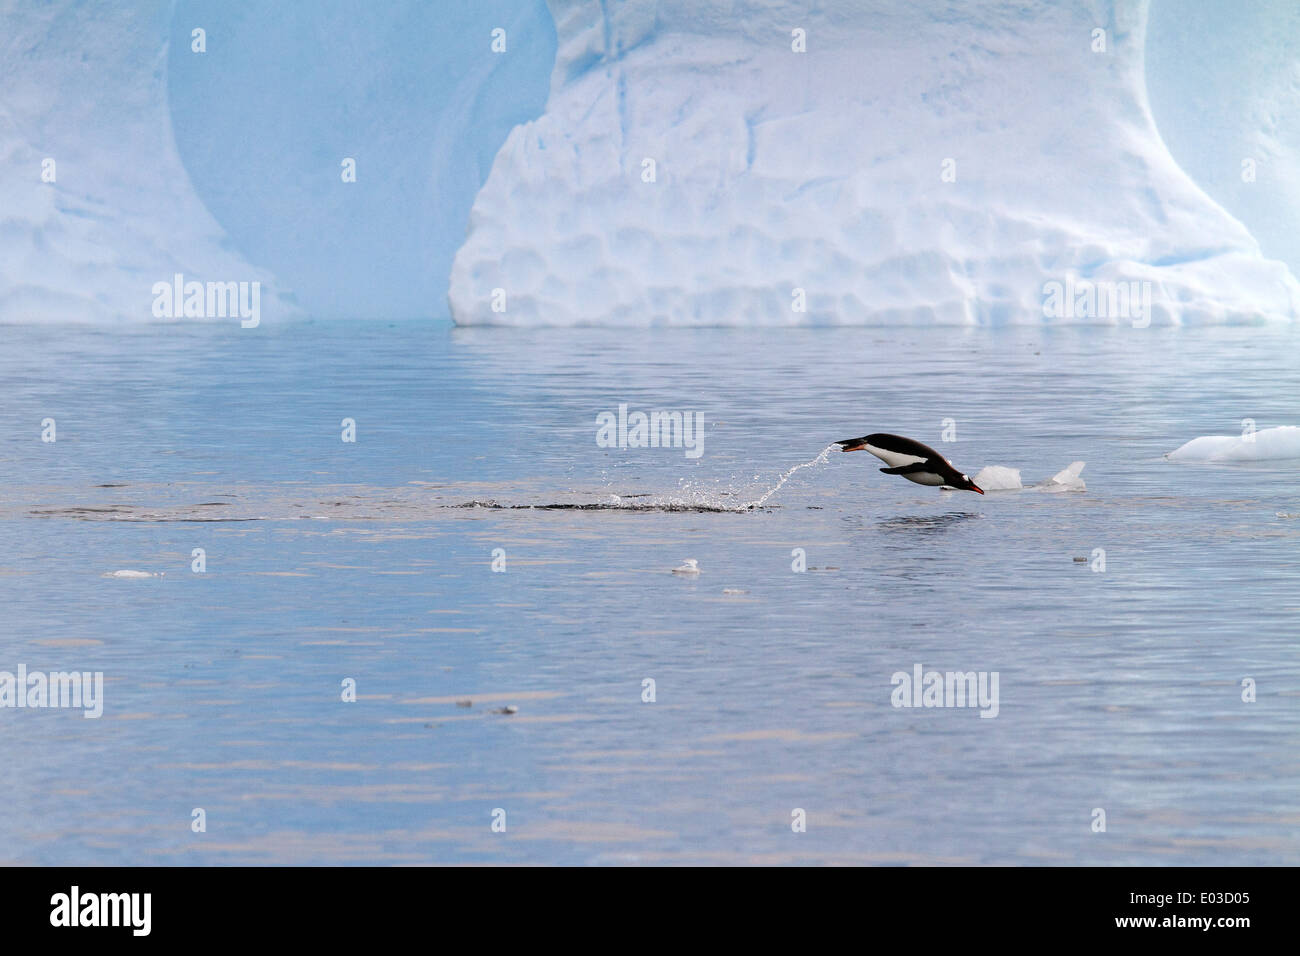 Penguin jumping, près de marsouinage iceberg en Antarctique, péninsule antarctique. Gentoo pingouin, Pygoscelis papua. Banque D'Images